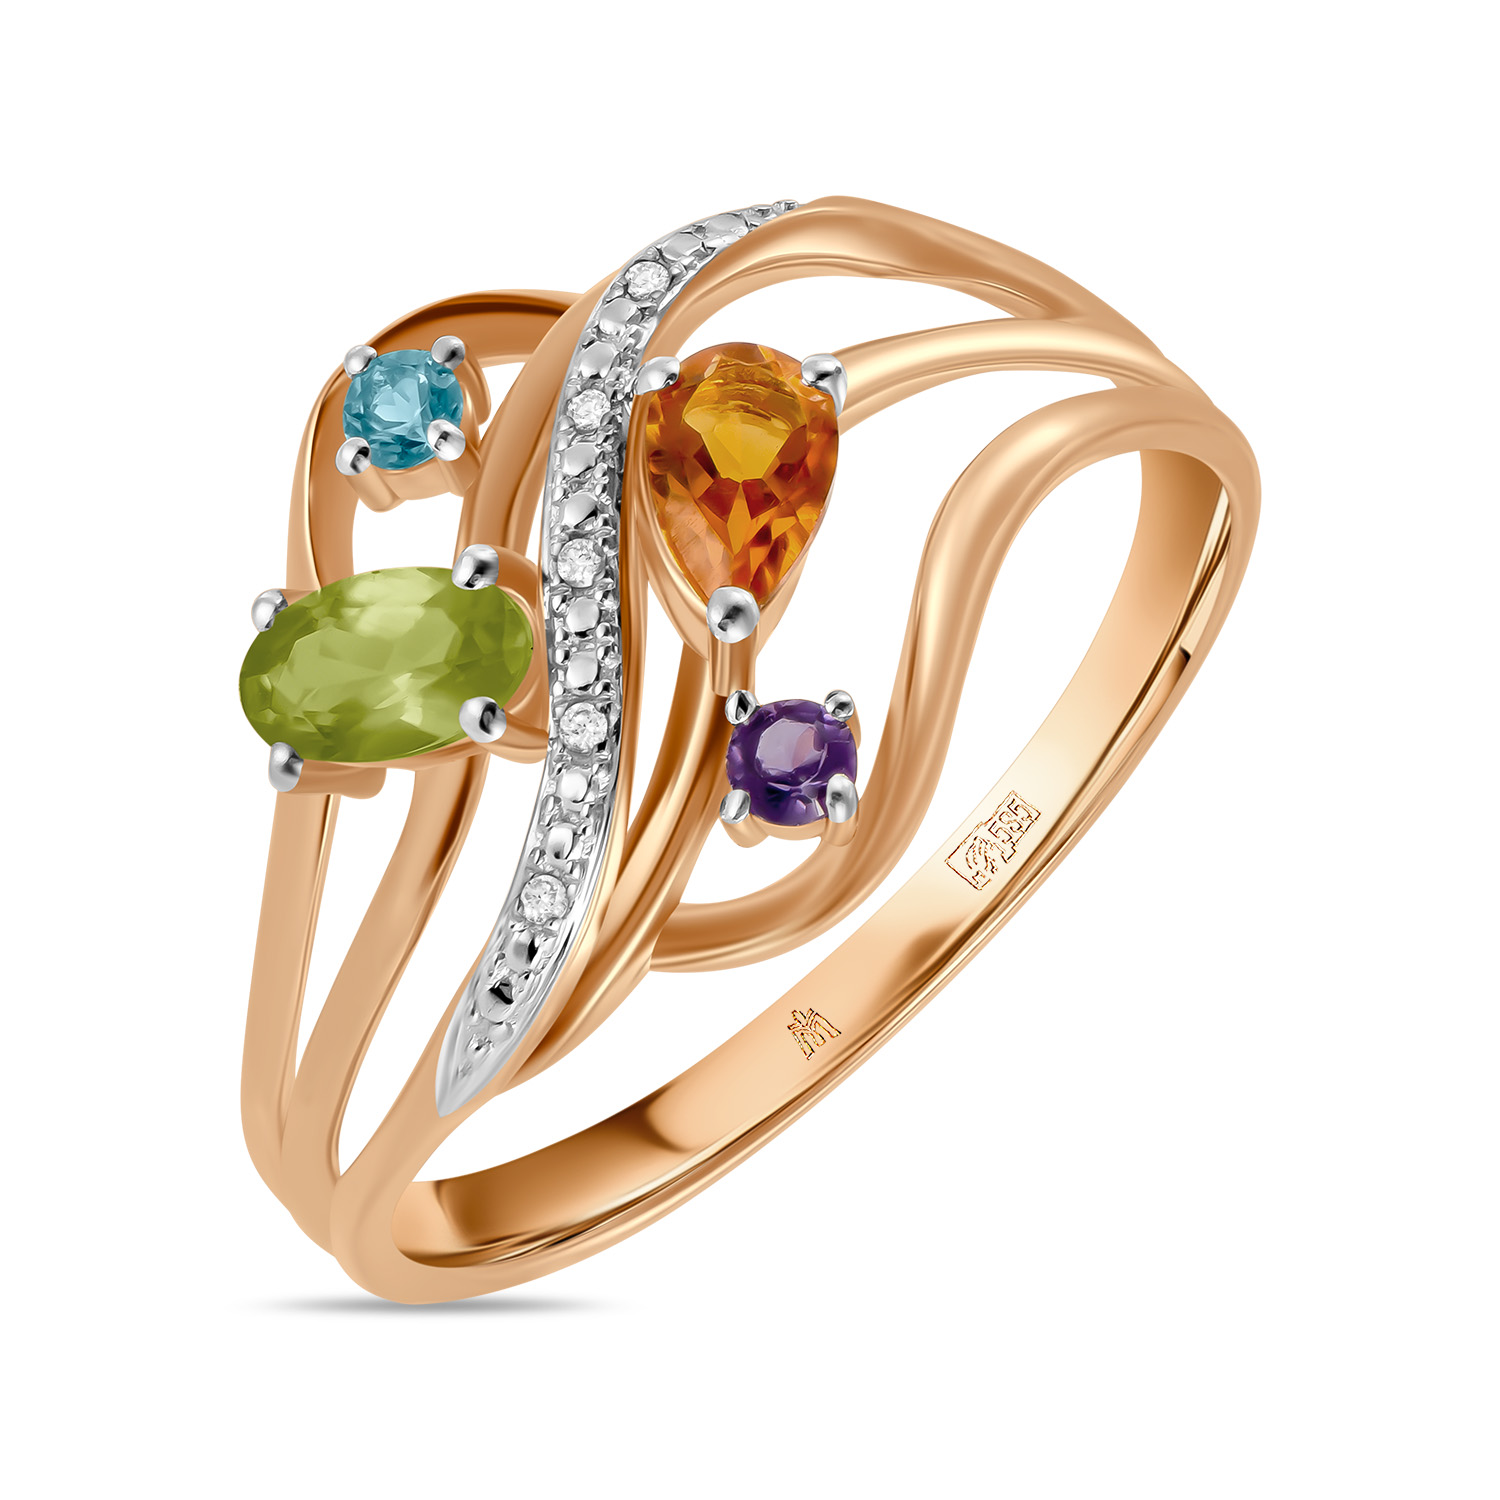 Кольца МЮЗ Золотое кольцо с аметистом, топазом, цитрином, бриллиантами и перидотом кольца мюз золотое кольцо с аметистом топазом цитрином бриллиантами и перидотом